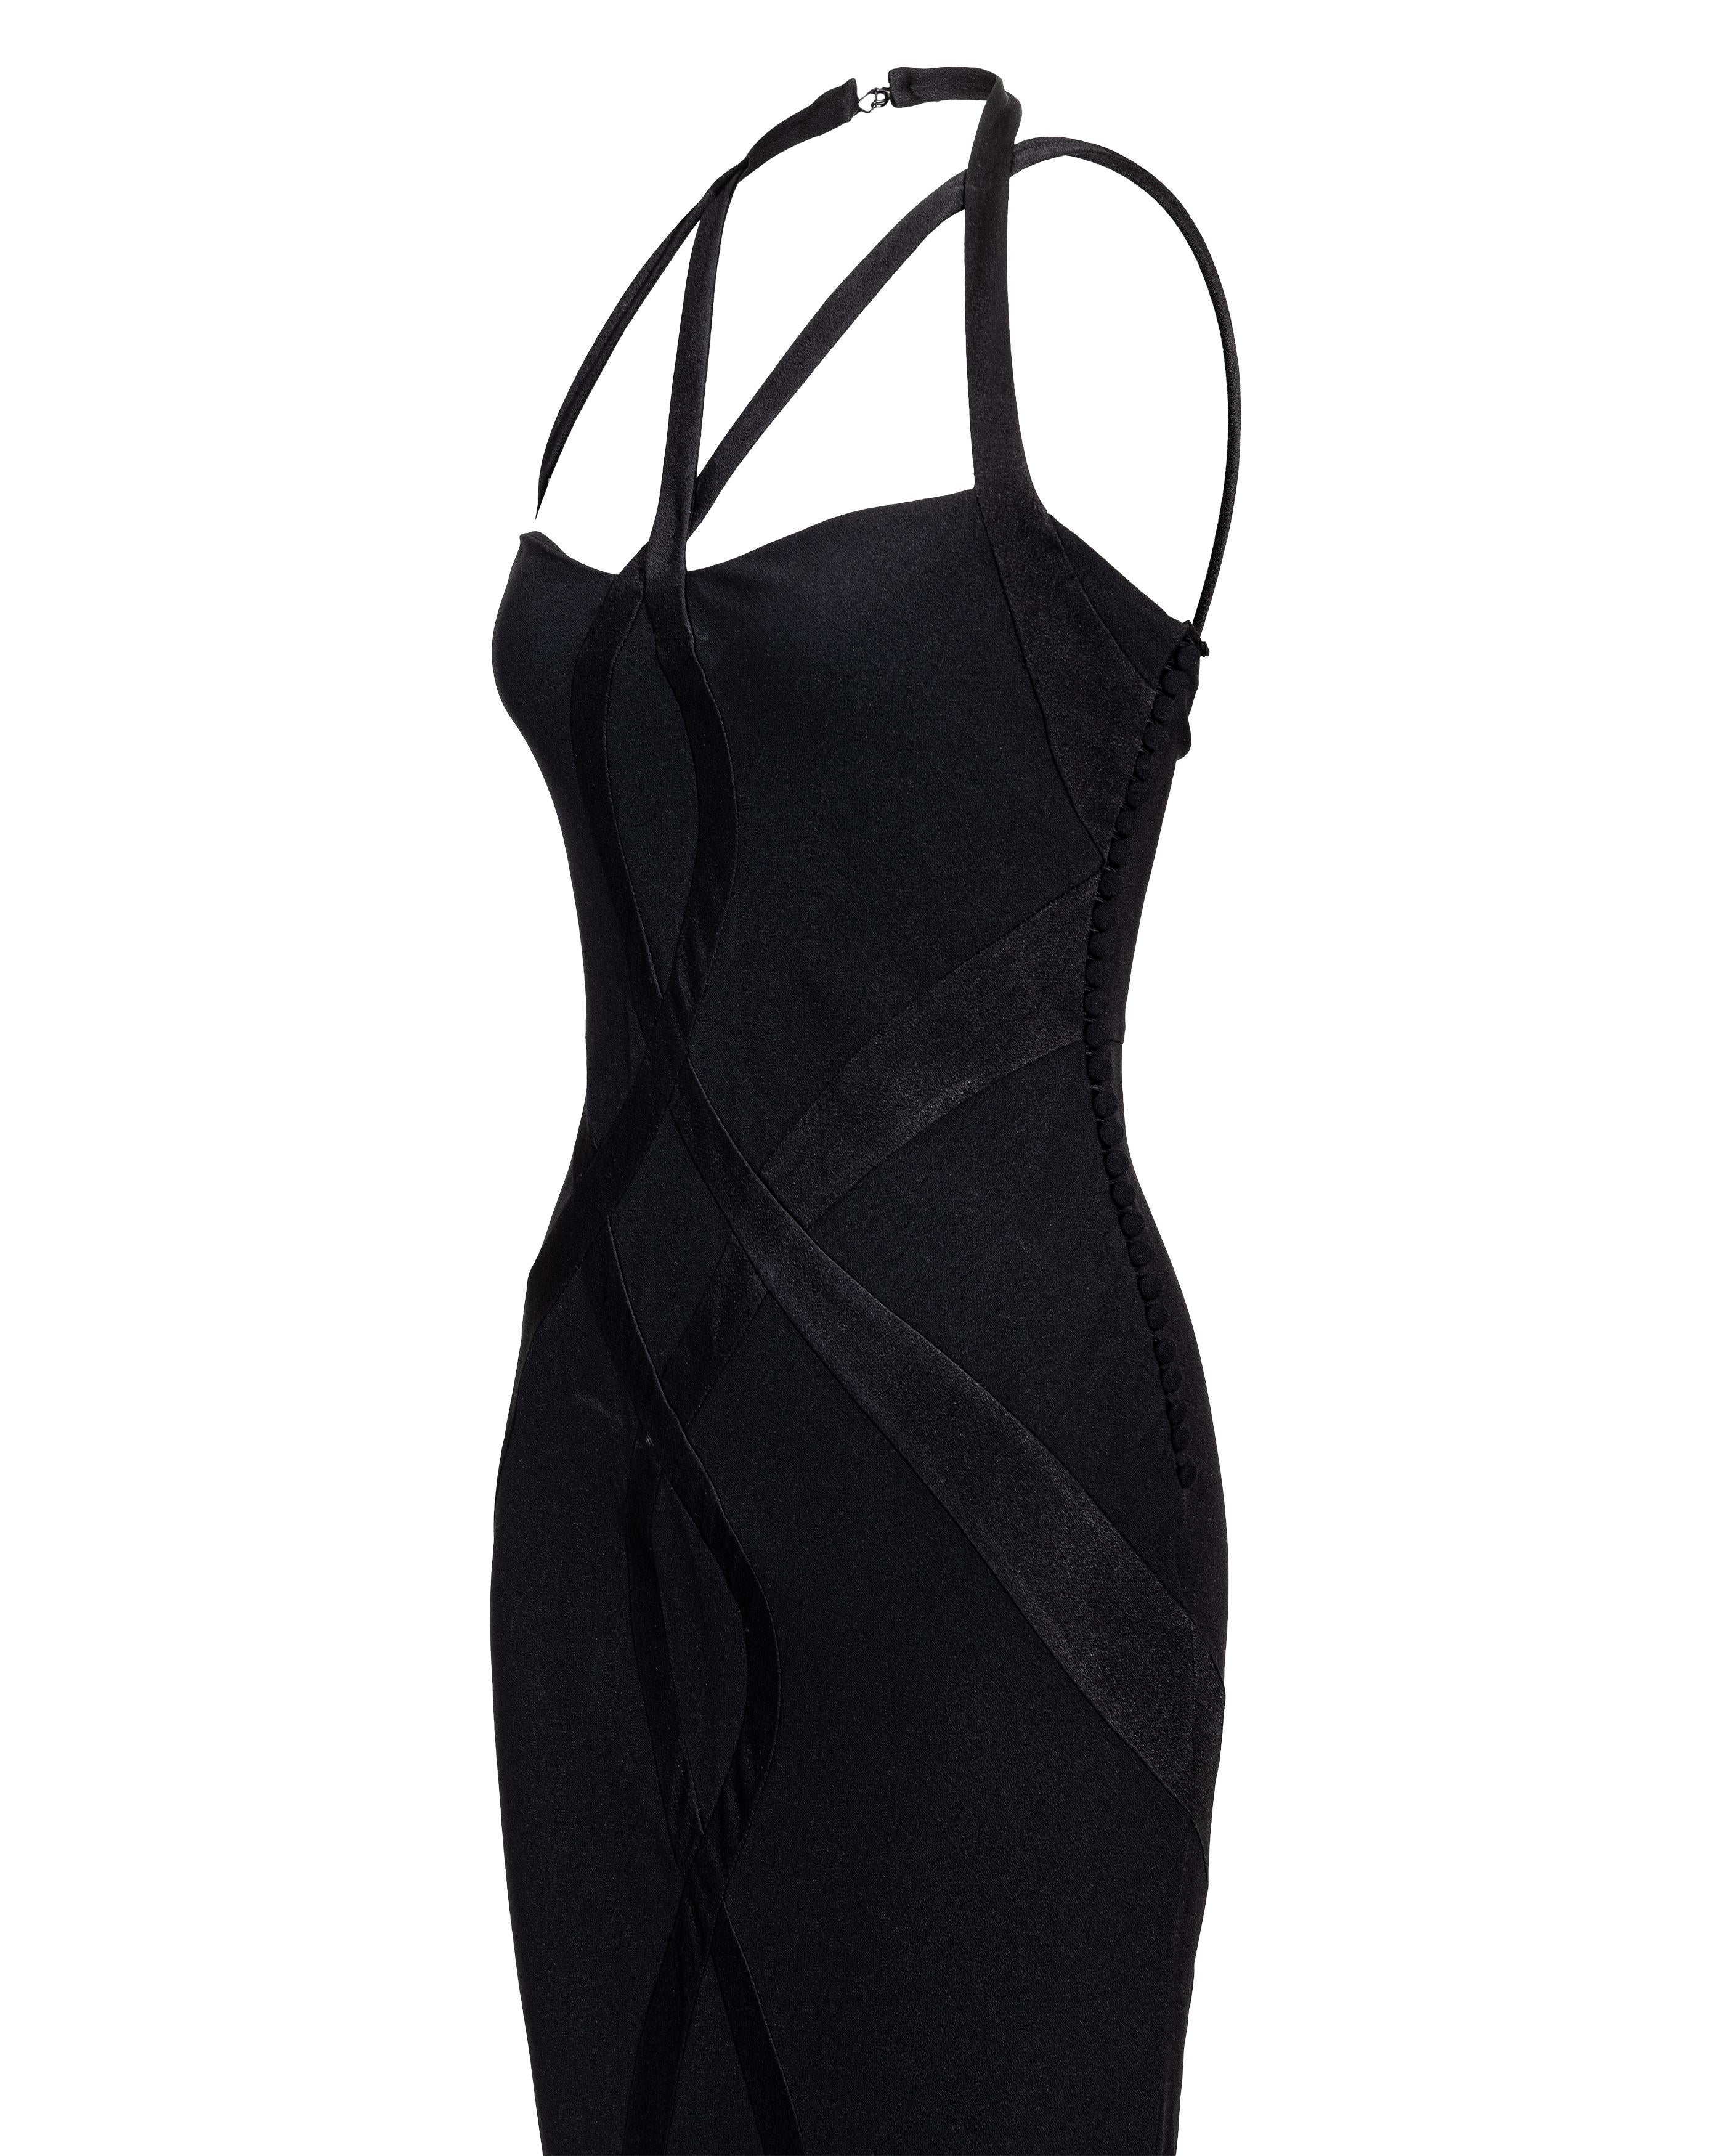 A/W 2004 Christian Dior Cutout Black Silk Gown 3